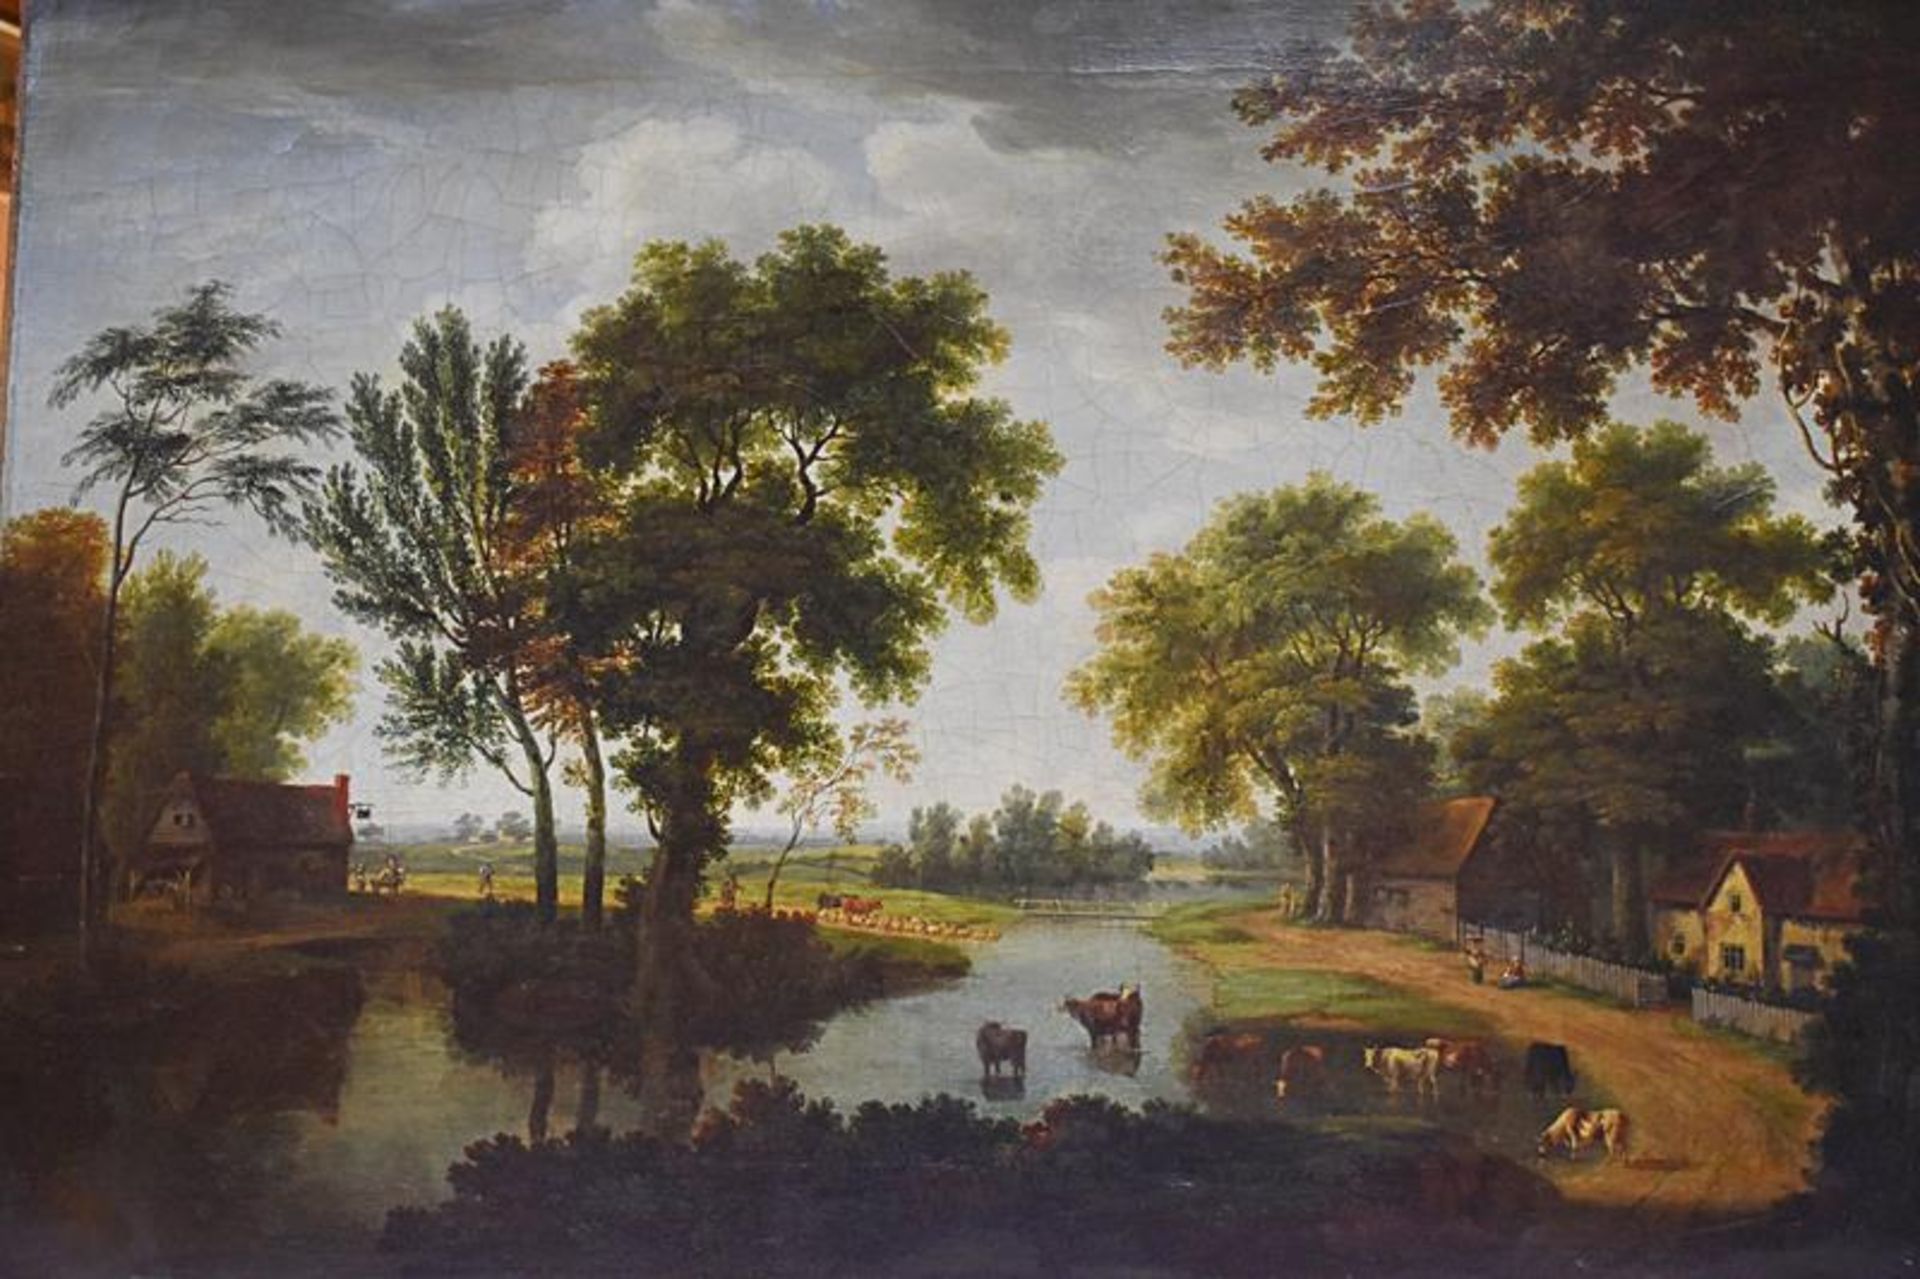 Patrick Nasmyth (1787-1831) Flusslandschaft mit KühenMindestpreis 2000Bezeichnung Patrick Nasmyth (